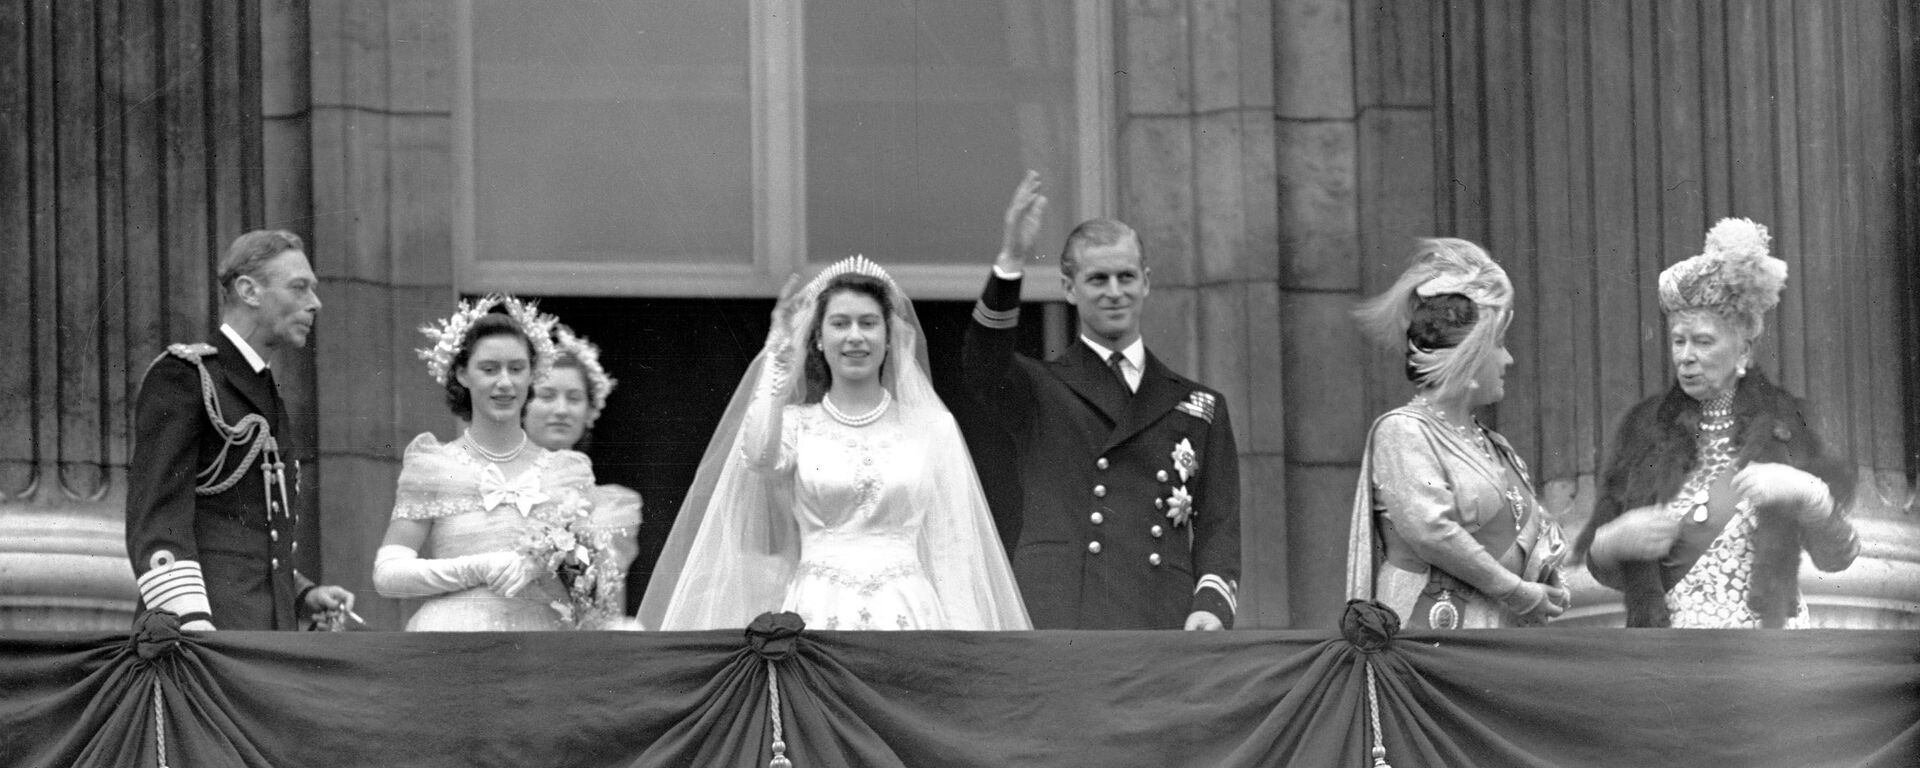 La reina Isabel II y el príncipe Felipe de Edimburgo durante el día de su boda - Sputnik Mundo, 1920, 25.01.2021